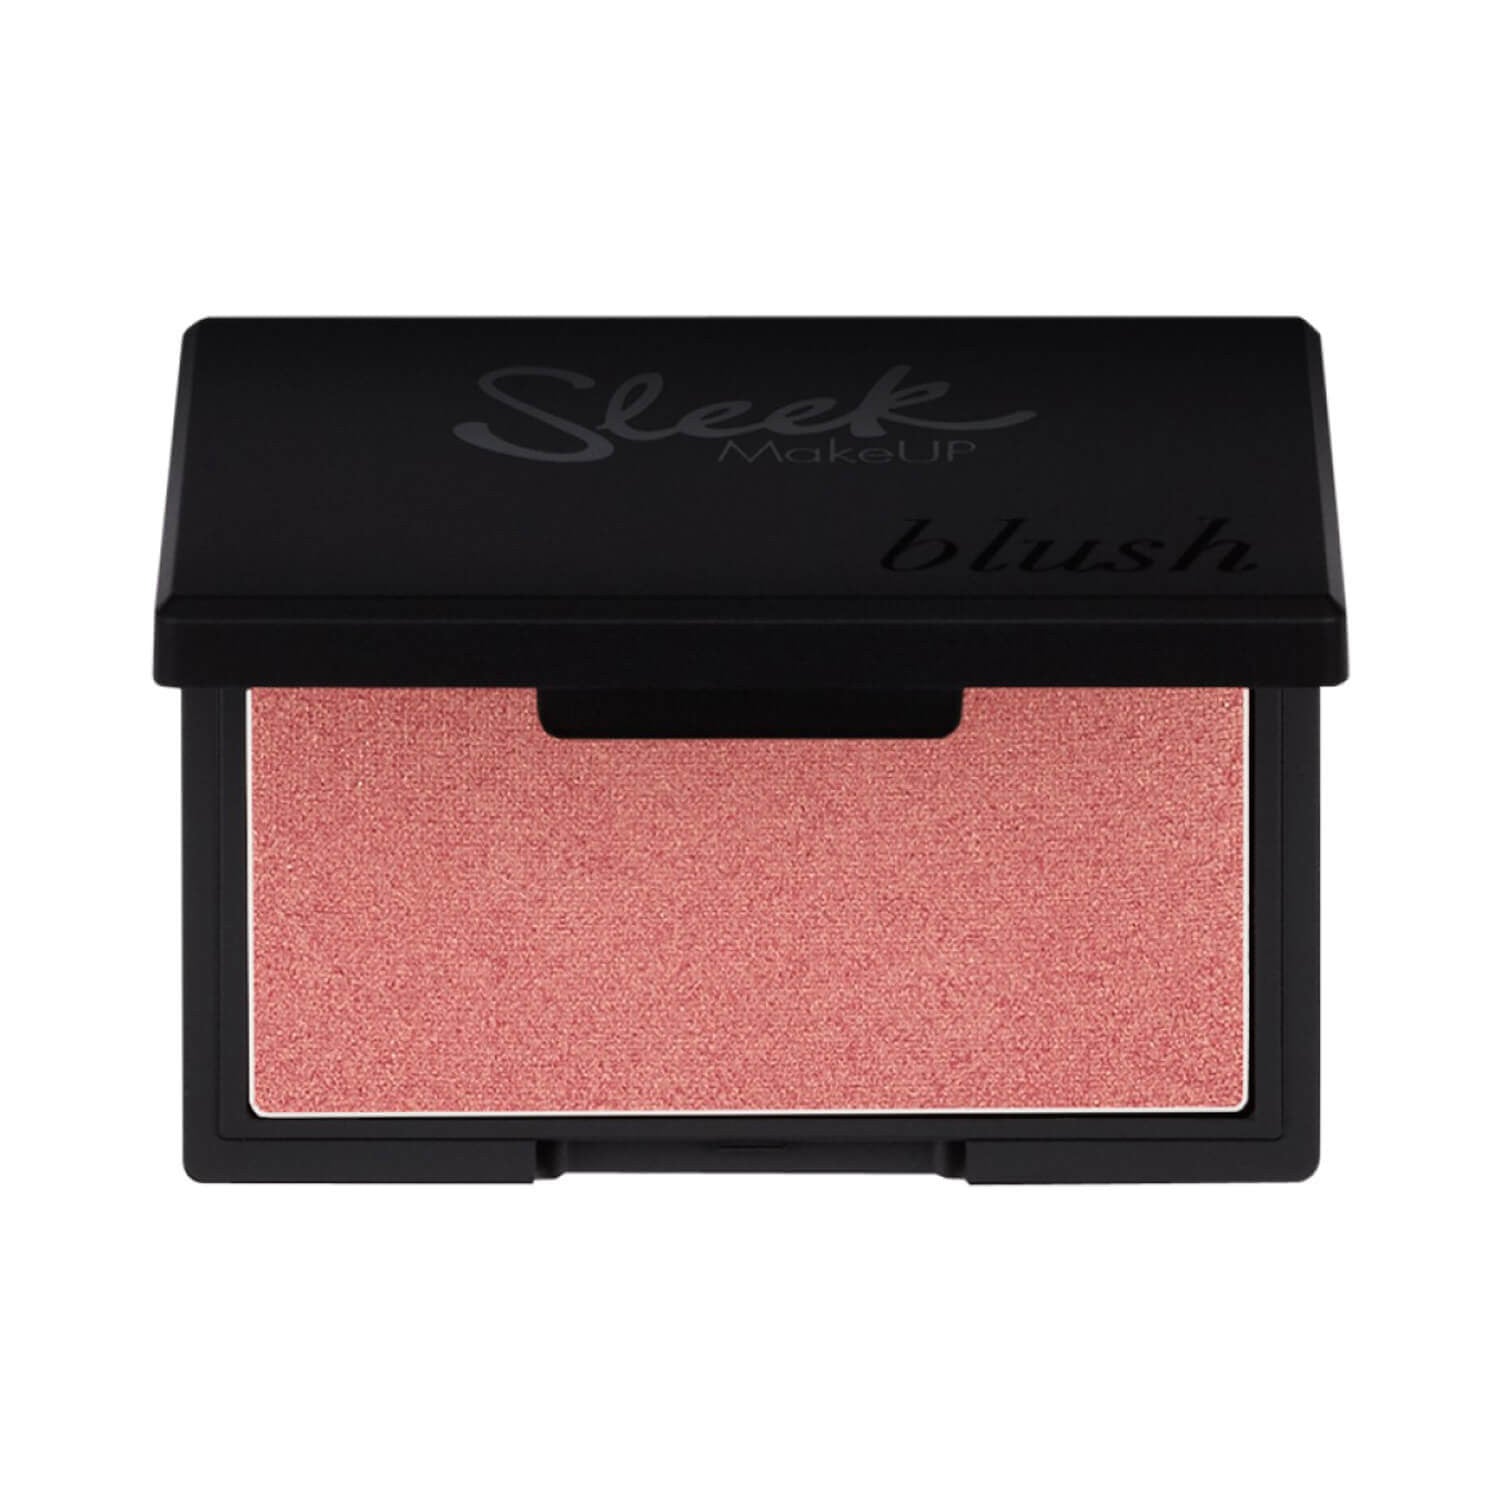 Sleek Makeup - Blush in Rose Gold –